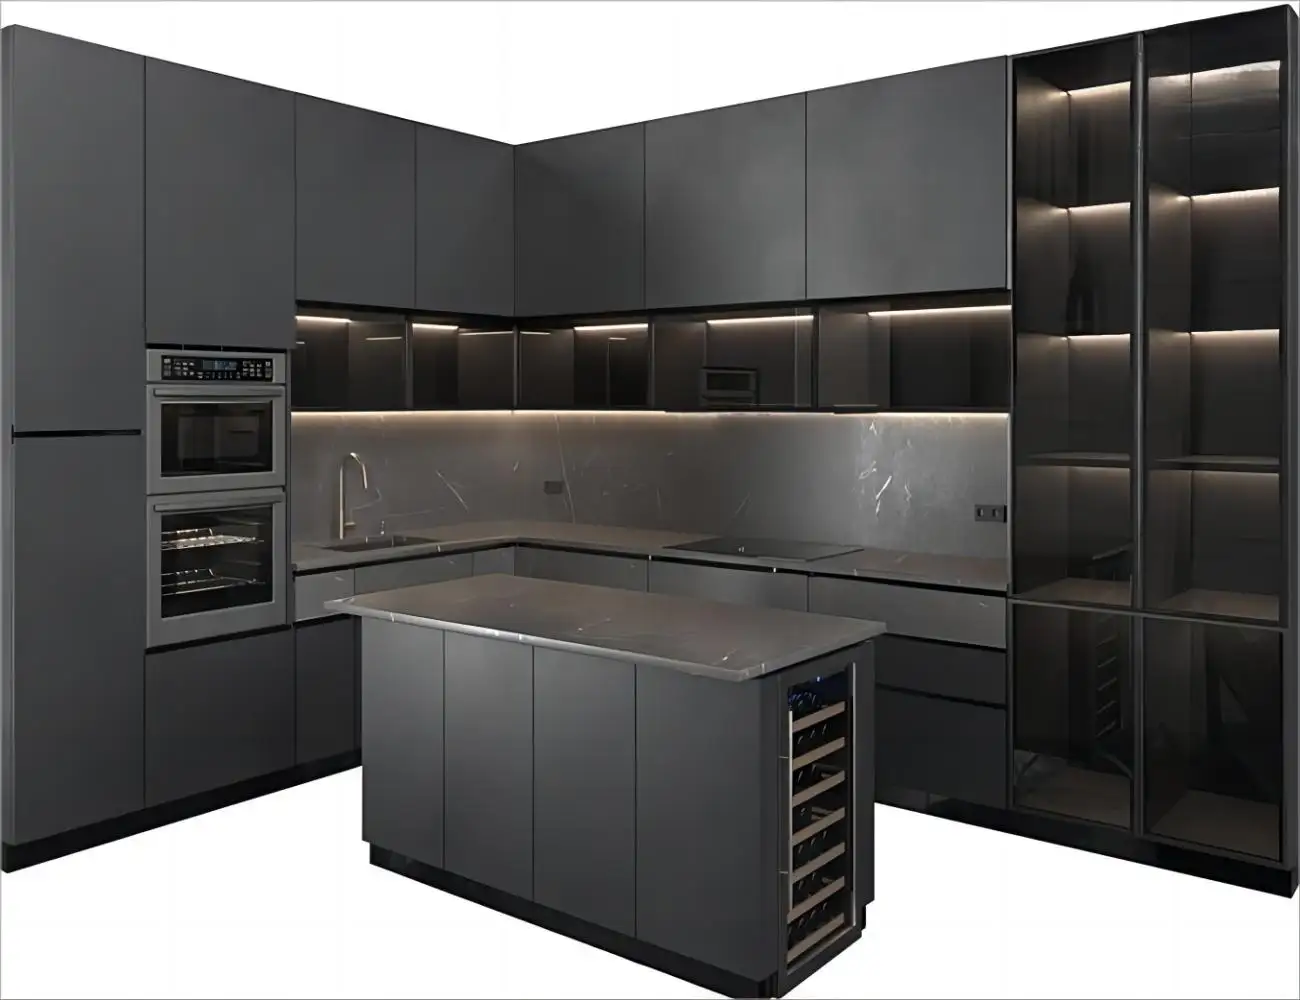 KEJIA высококачественный современный дизайн кухонный шкаф модульный черный цвет лаковый кухонный шкаф шкафы для дома